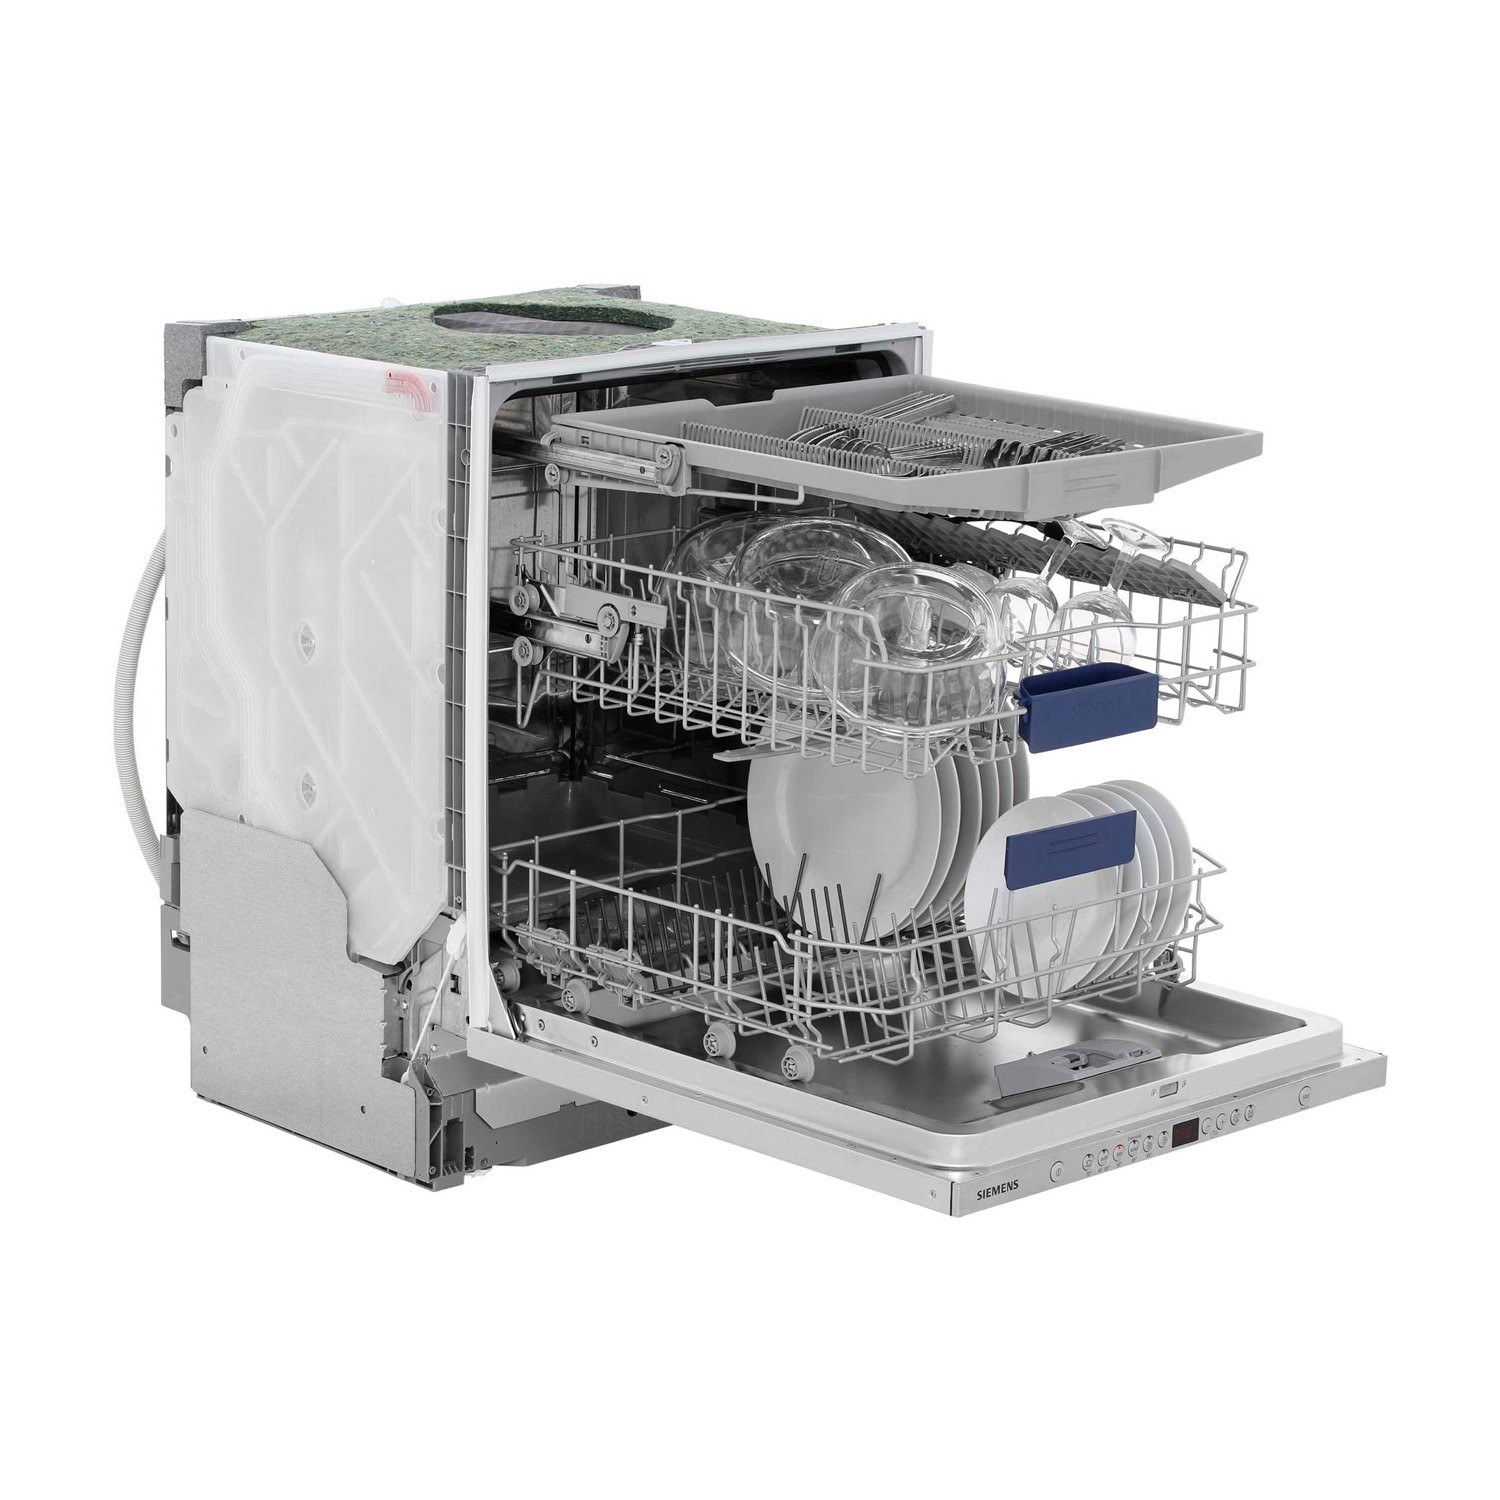 siemens dishwasher integrated